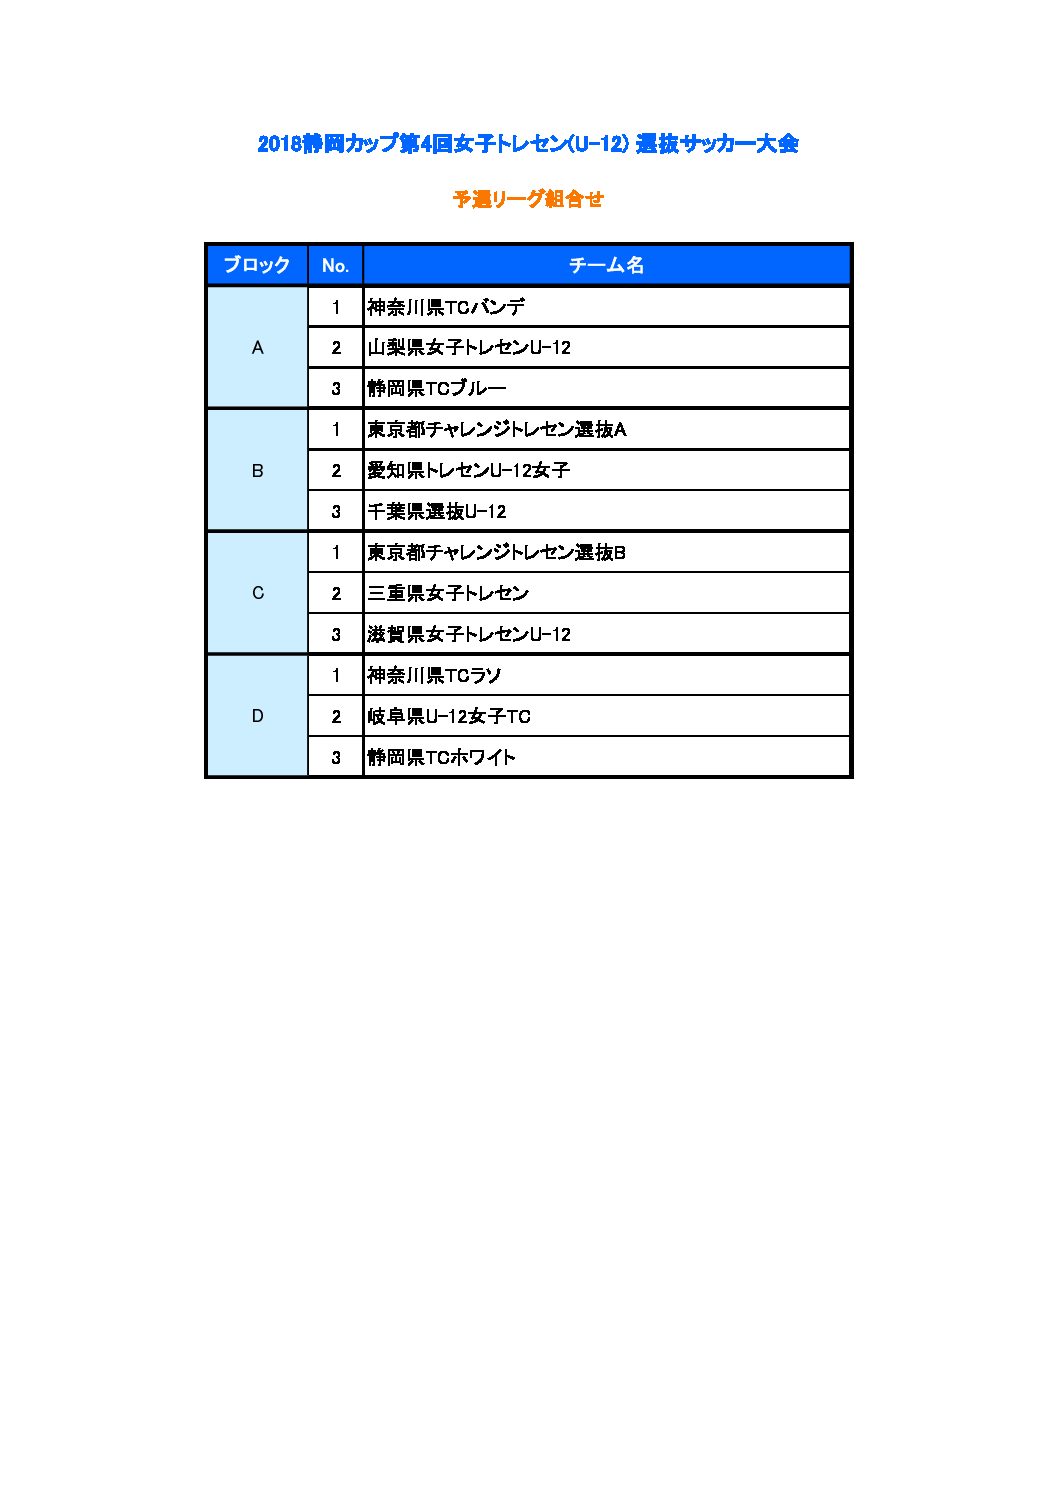 18静岡カップ第4回女子トレセン U 12 選抜サッカー大会 一般財団法人 静岡県サッカー協会